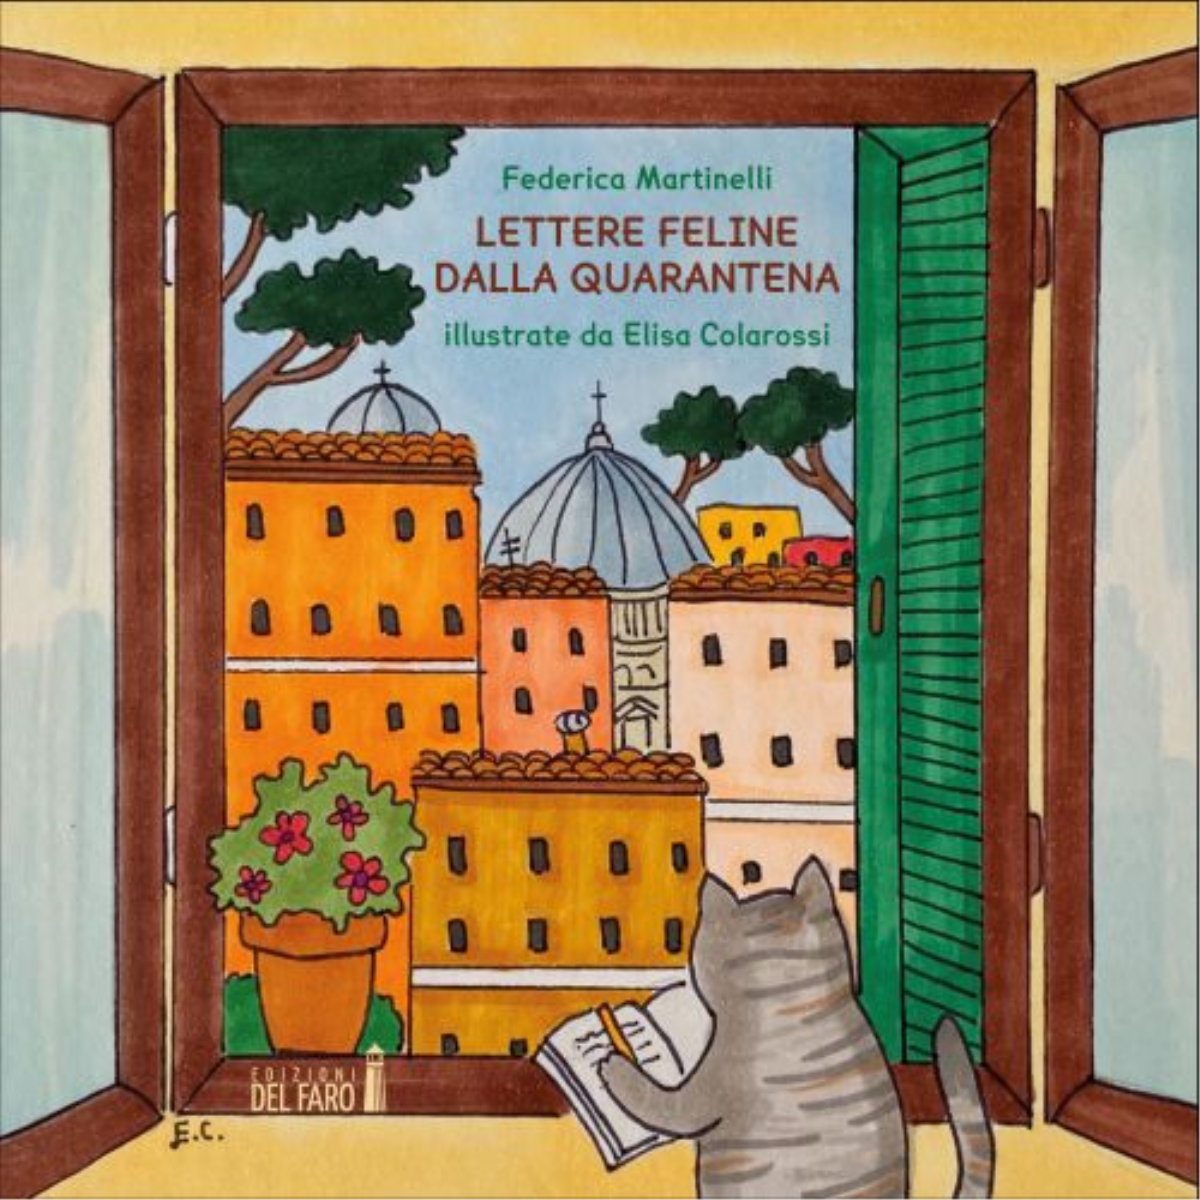 Lettere feline dalla quarantena di Martinelli Federica - Edizioni Del faro, 2020 libro usato